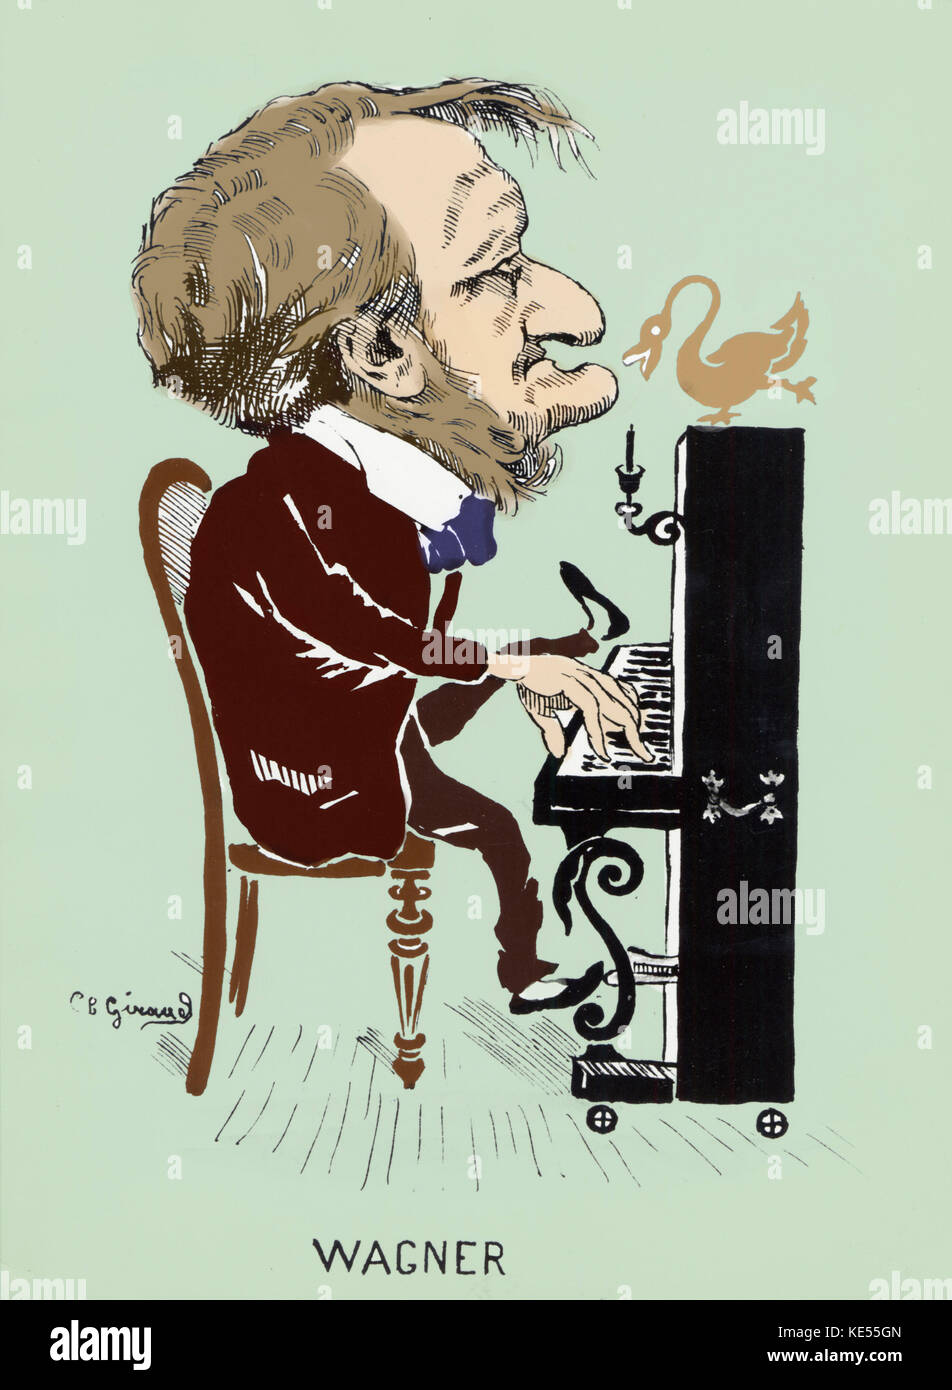 Richard Wagner improvvisare sul pianoforte con un cigno ballando sul pianoforte in tempo - Lohengrin connessione. Compositore tedesco & autore, 22 maggio 1813 - 13 febbraio 1883. Versione Colorised. Foto Stock